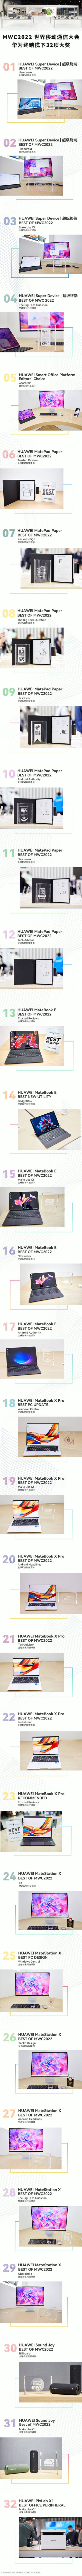 外媒评选MWC2022全场最佳 华为MatePad Paper墨水平板成大赢家